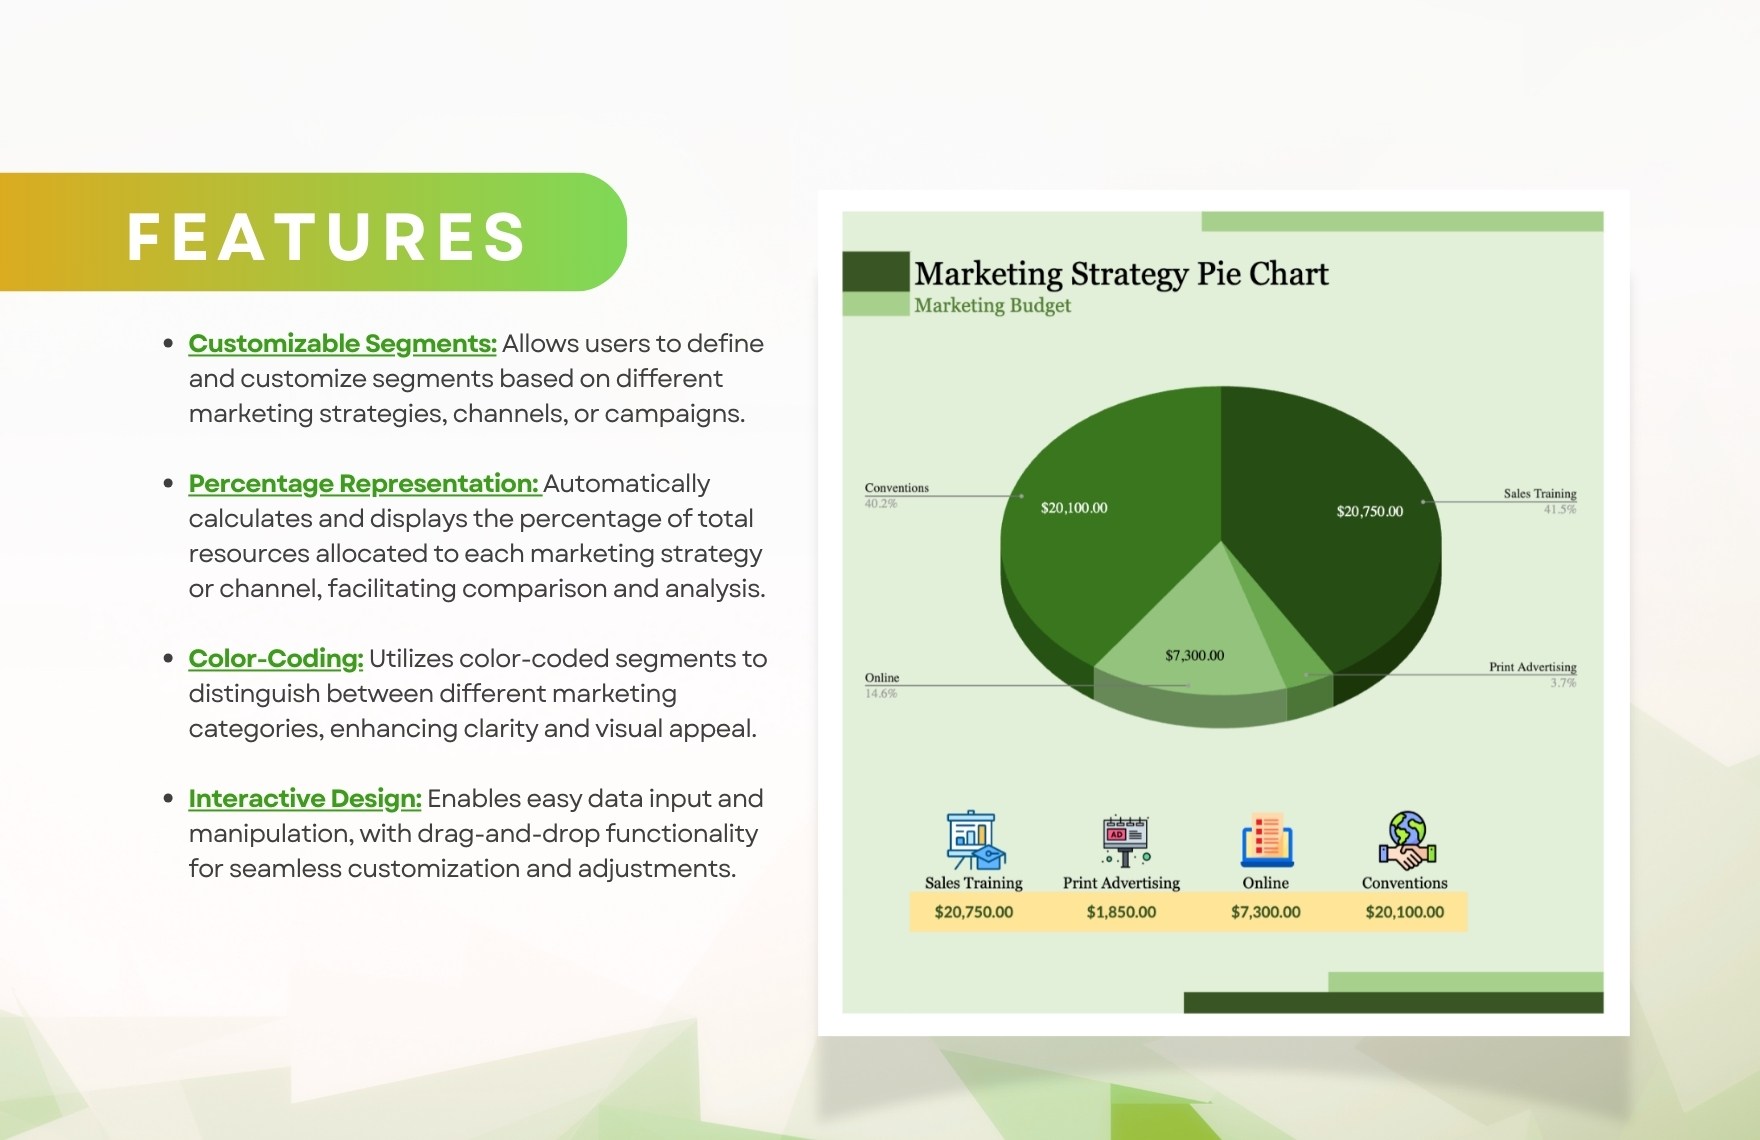 Marketing Strategy Pie Chart